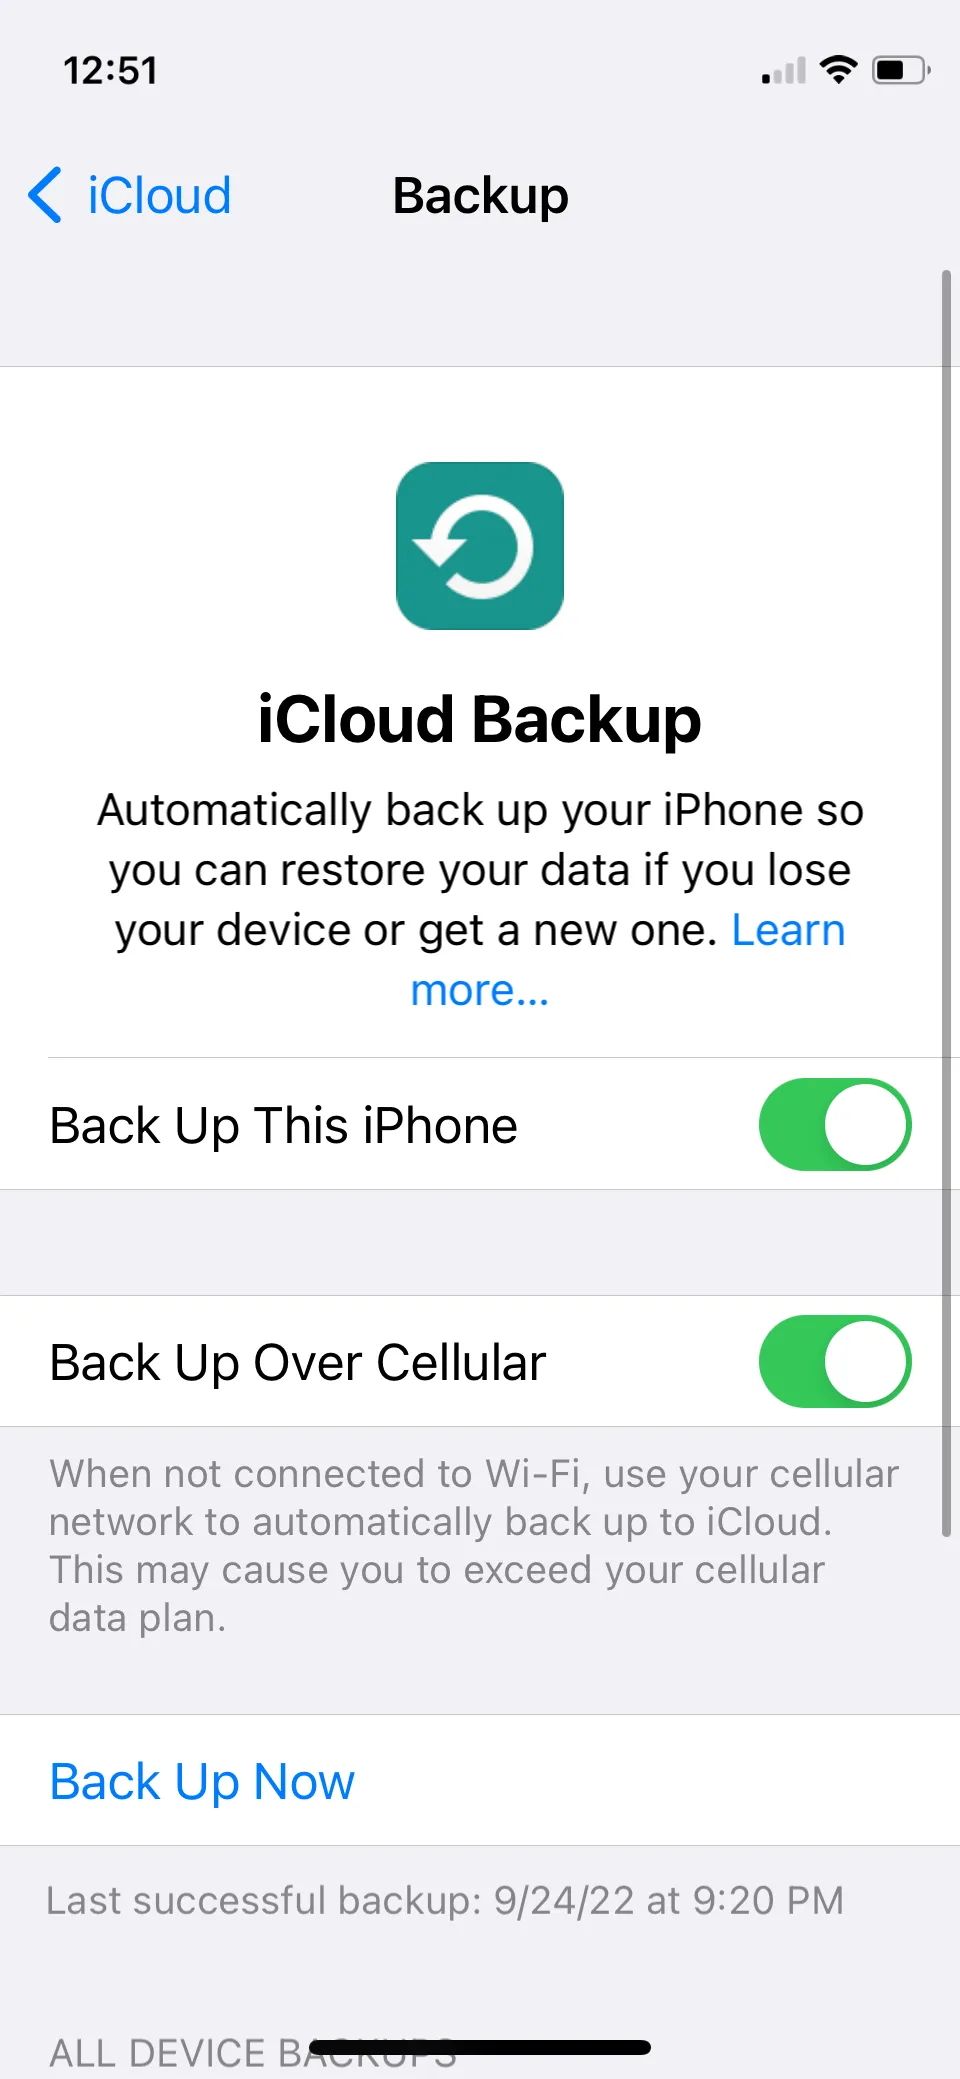 iCloud Backup on iPhone